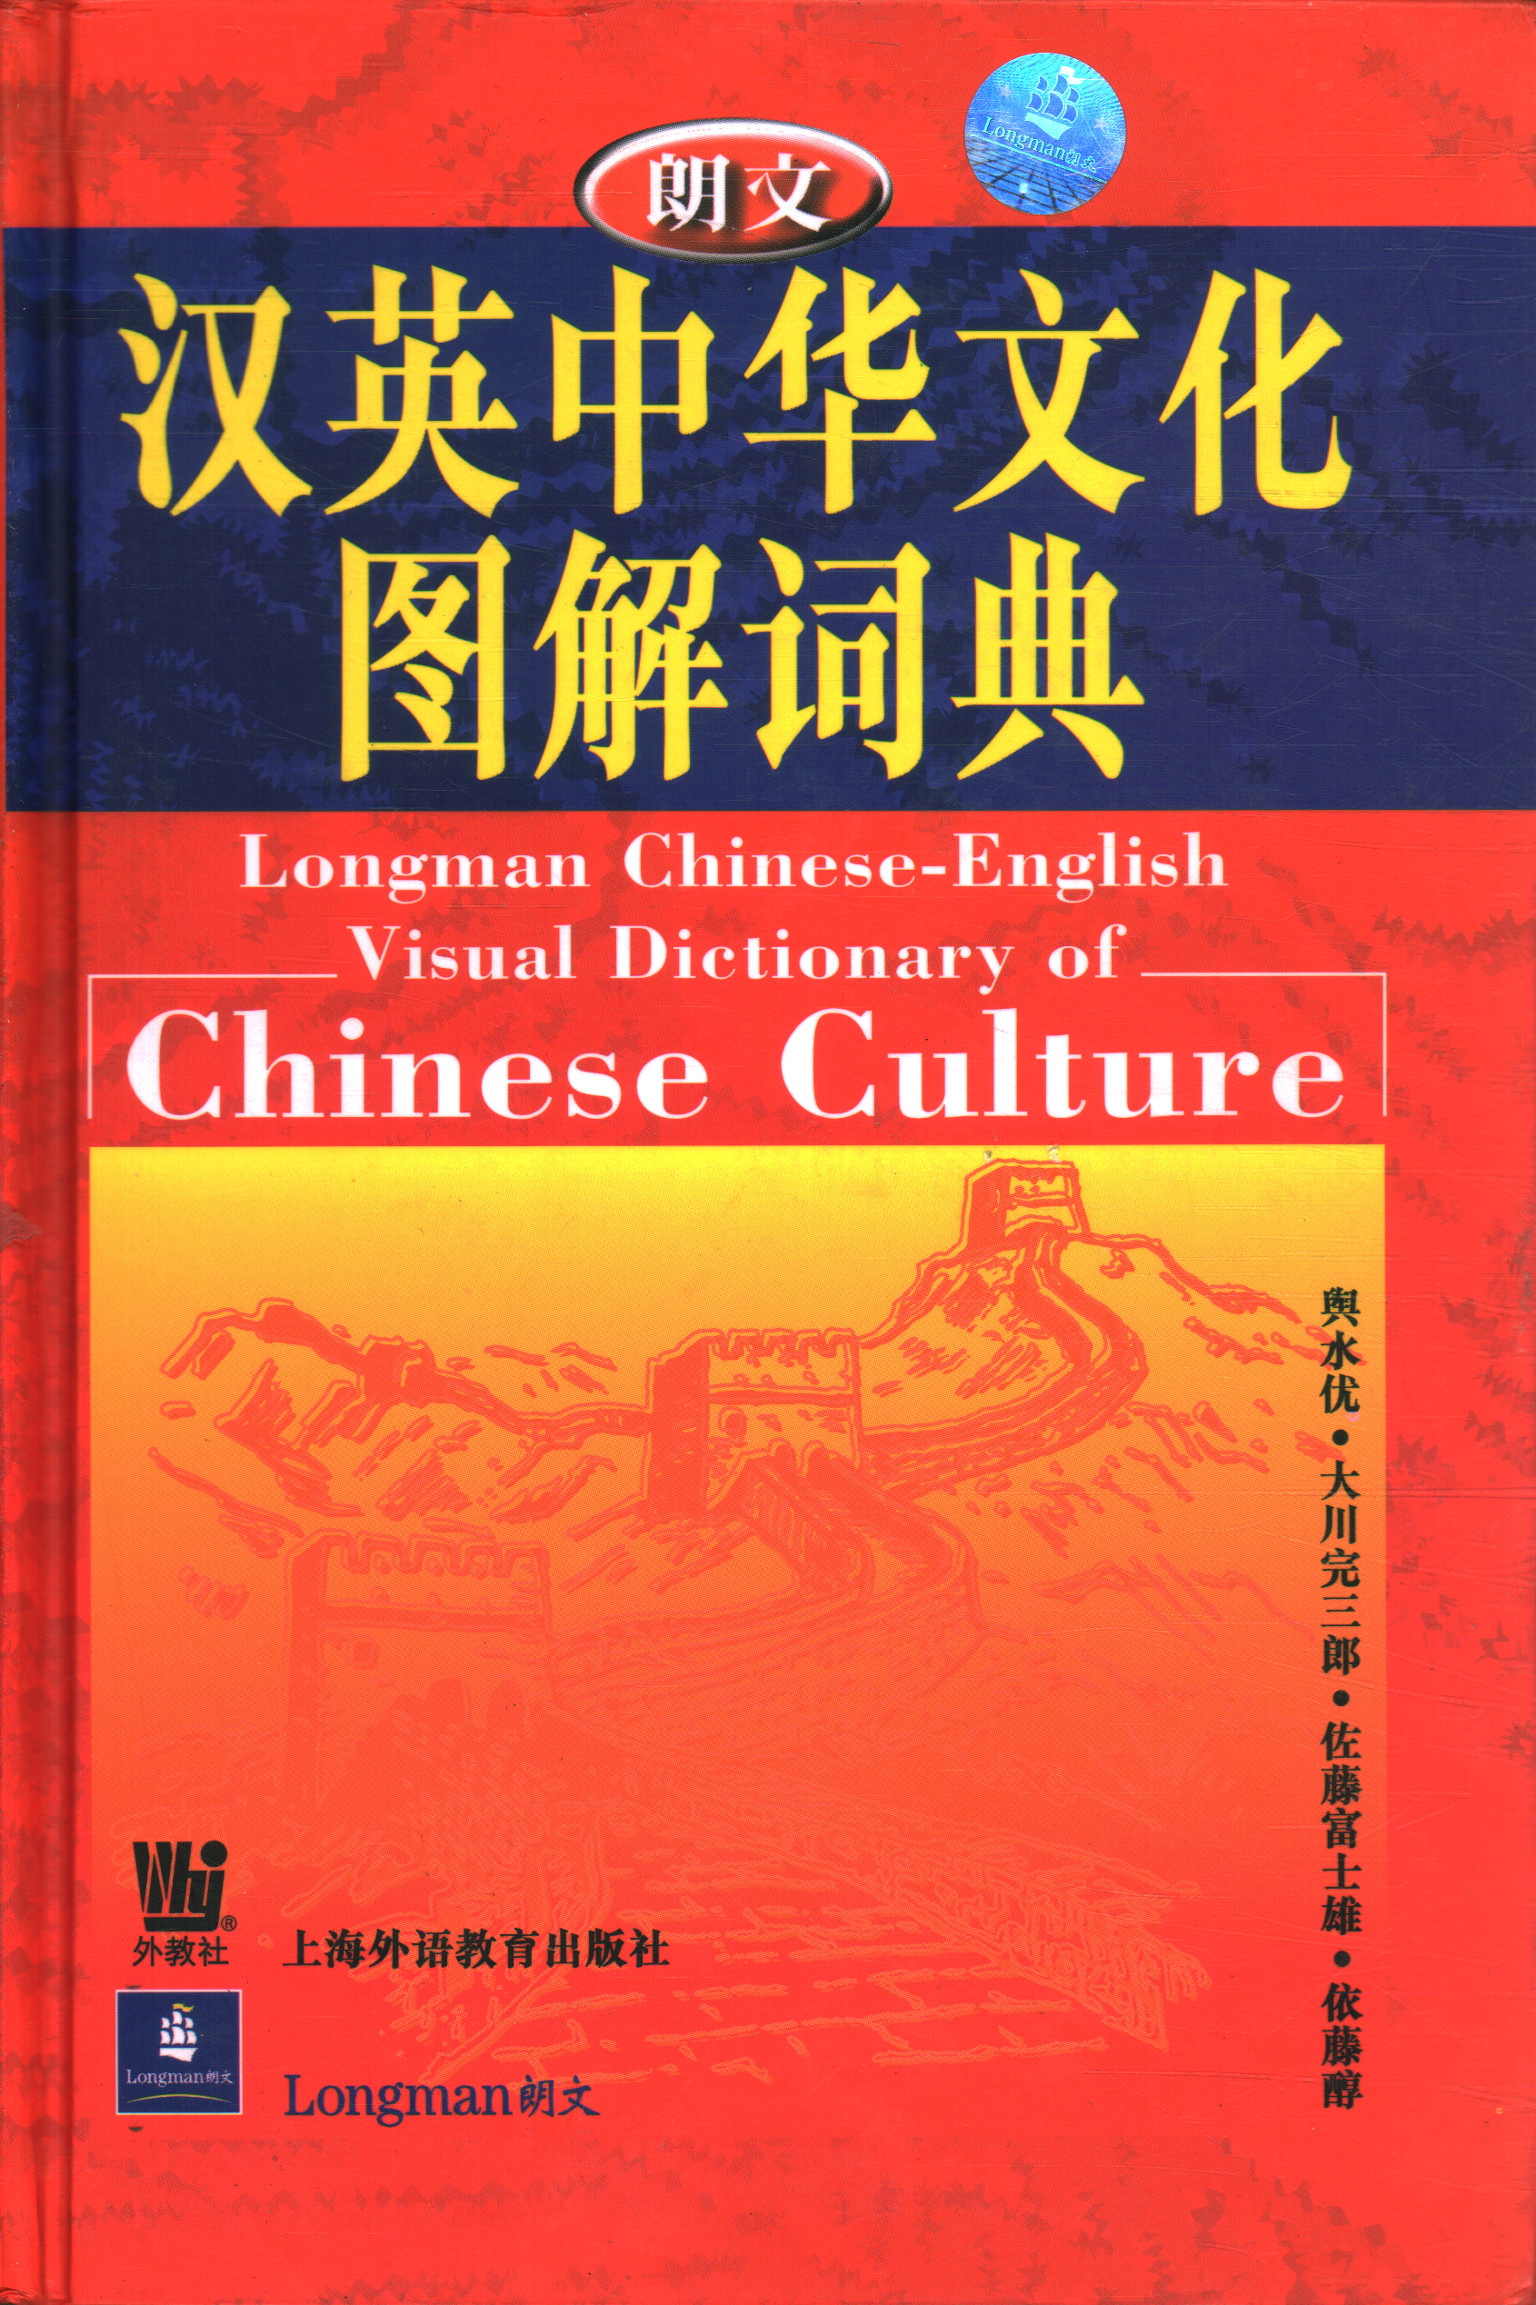 Longman Chinesisch-Englisches visuelles Wörterbuch